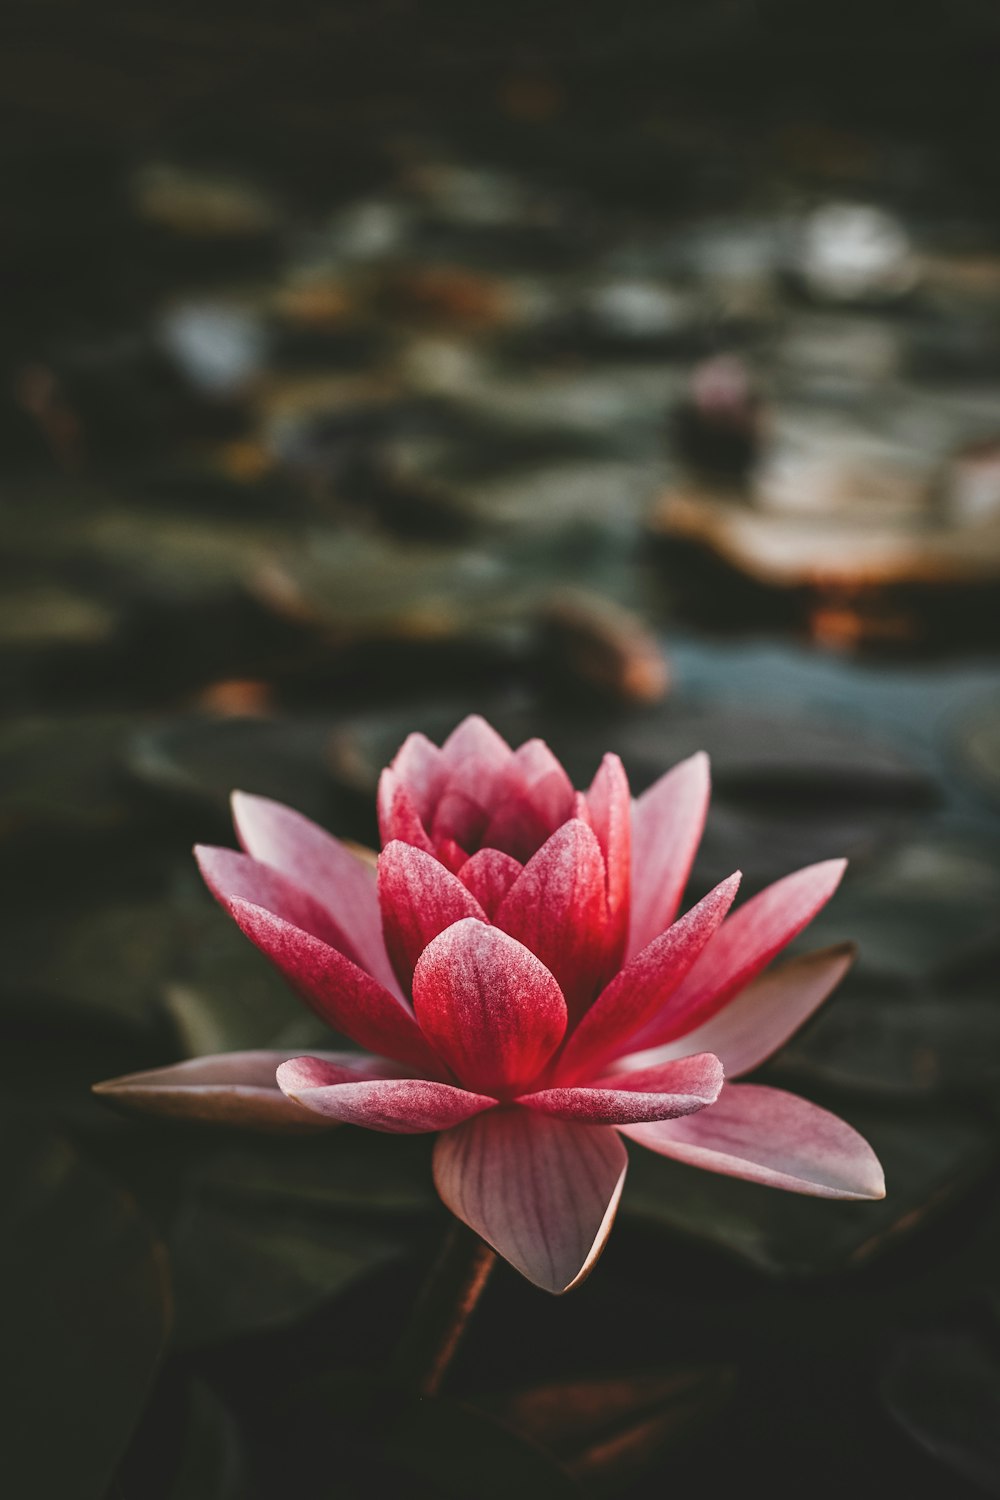 Más de 100 imágenes de flor de loto | Descargar imágenes gratis en Unsplash